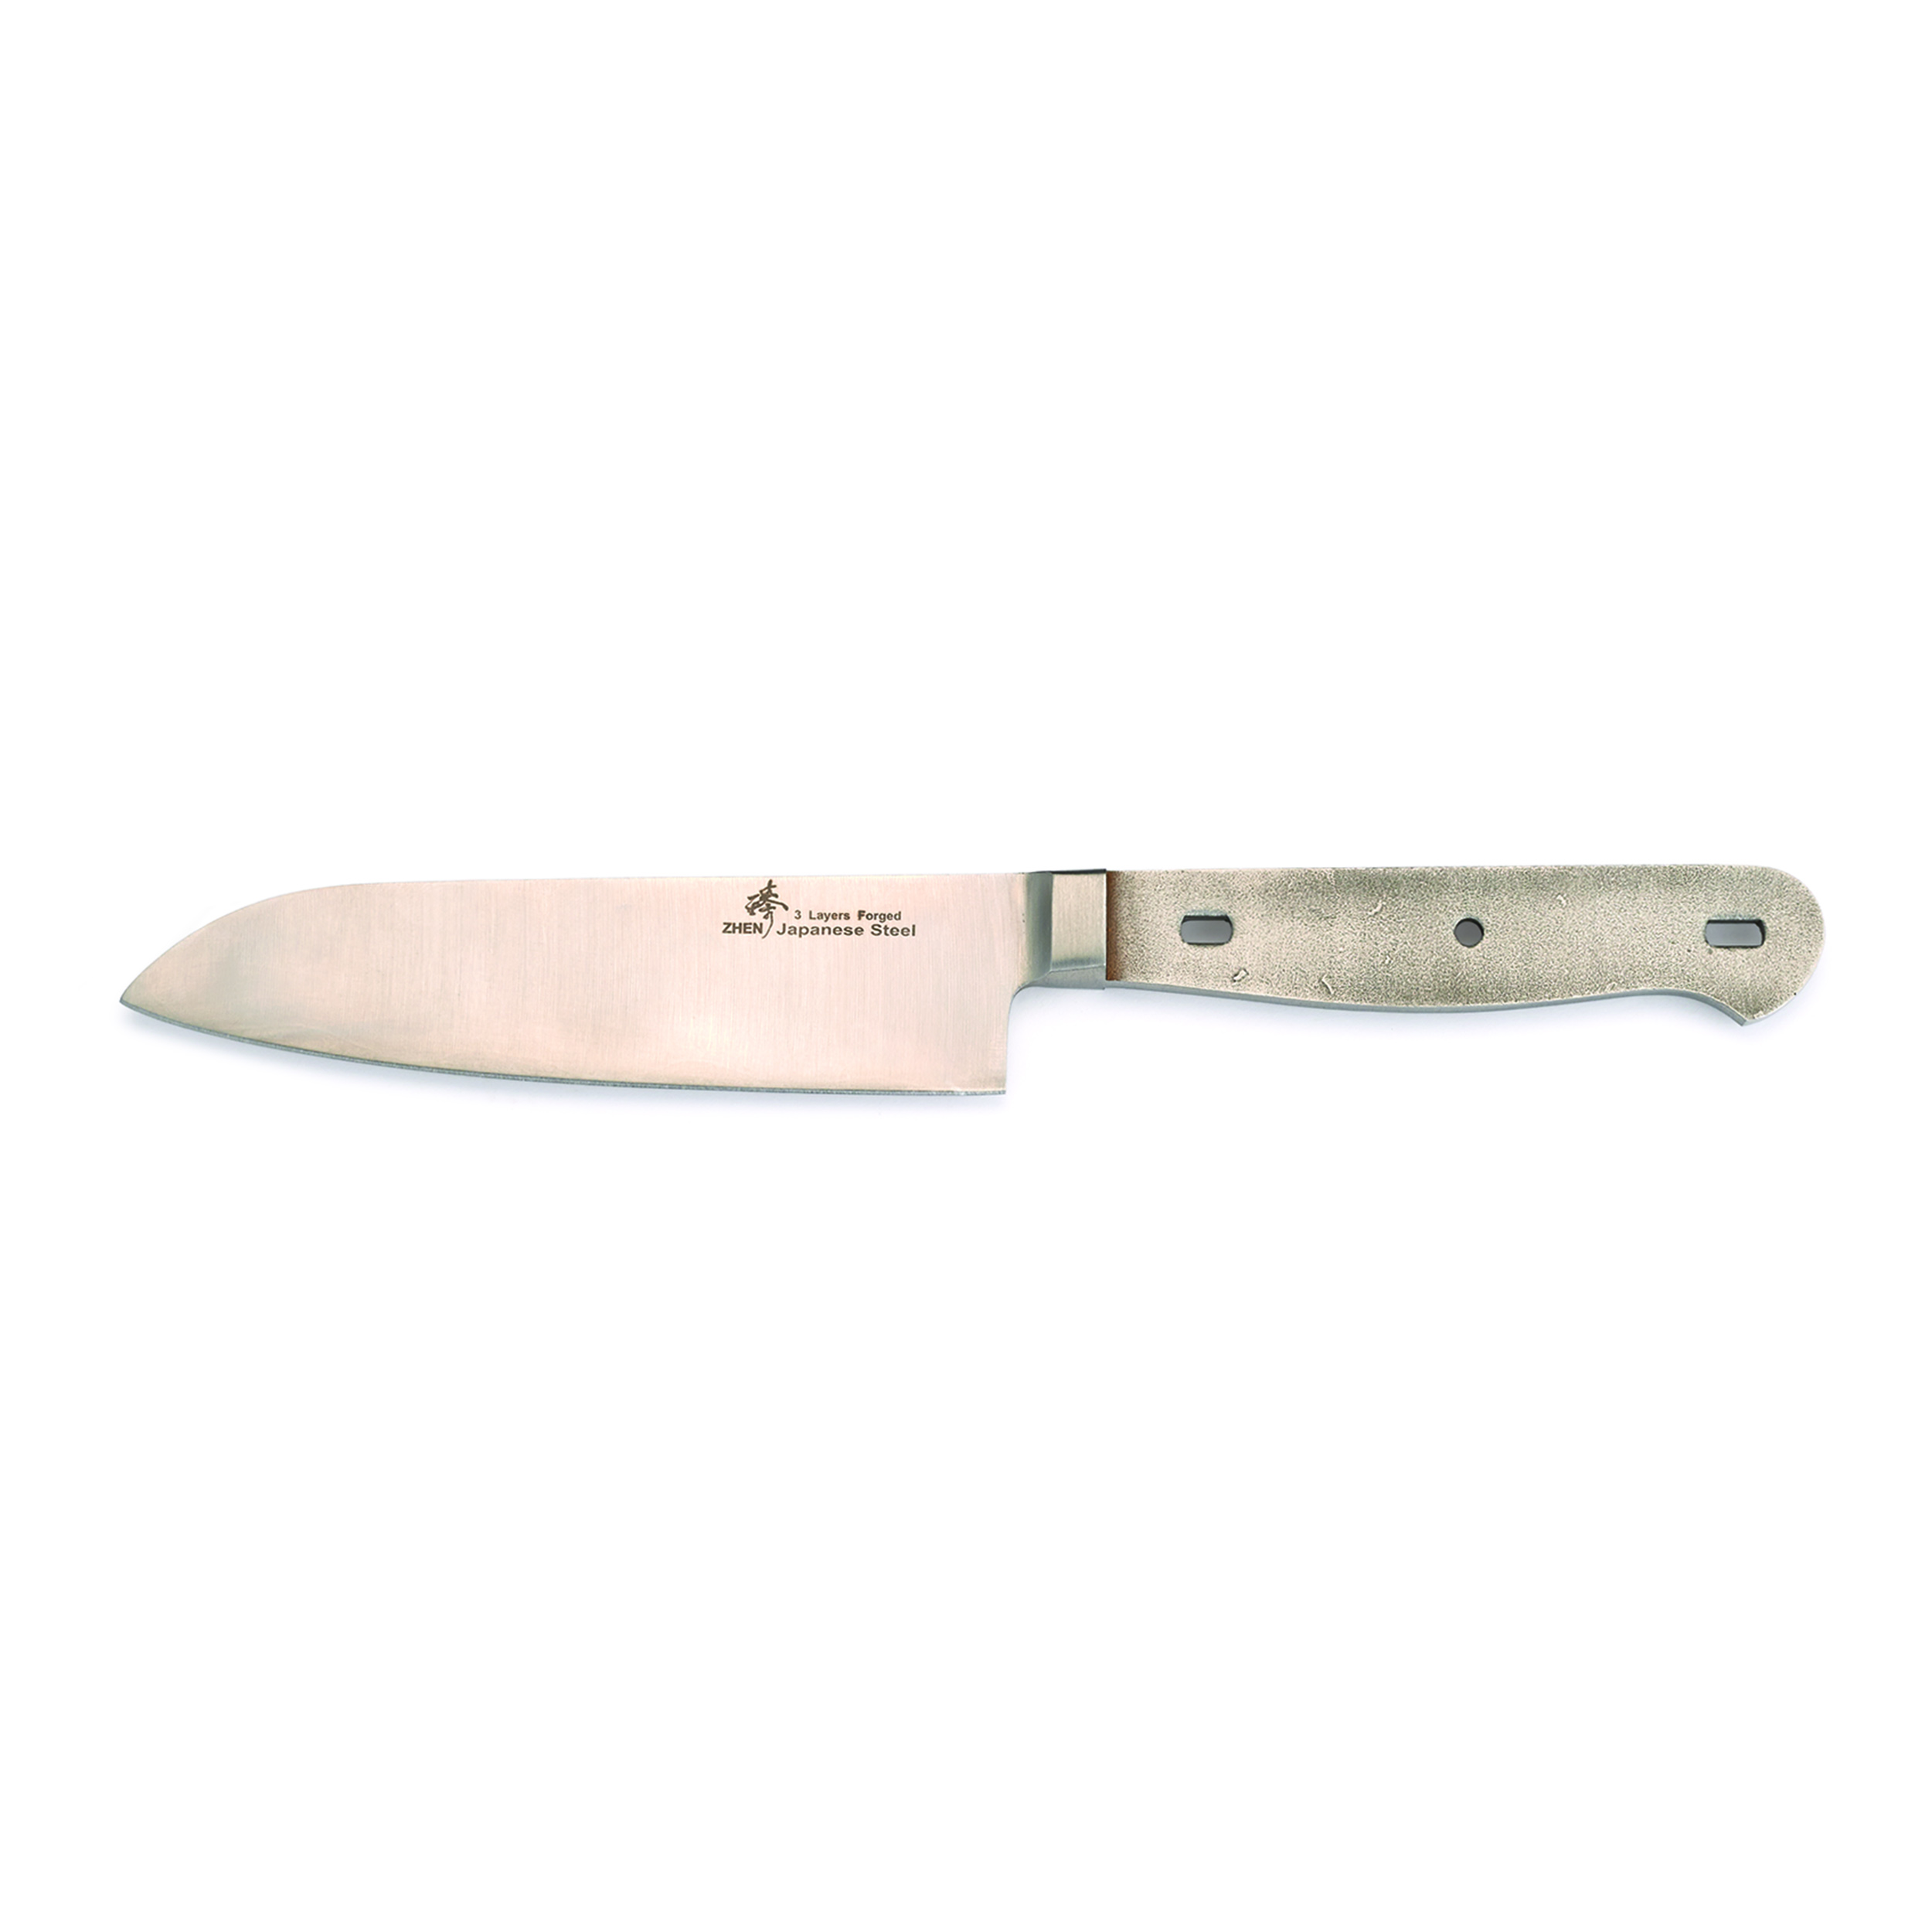 Santoku Aus 10 3-layer Knife Kit 4-3/16" L X 5/64" T (120mm X 1.8mm)